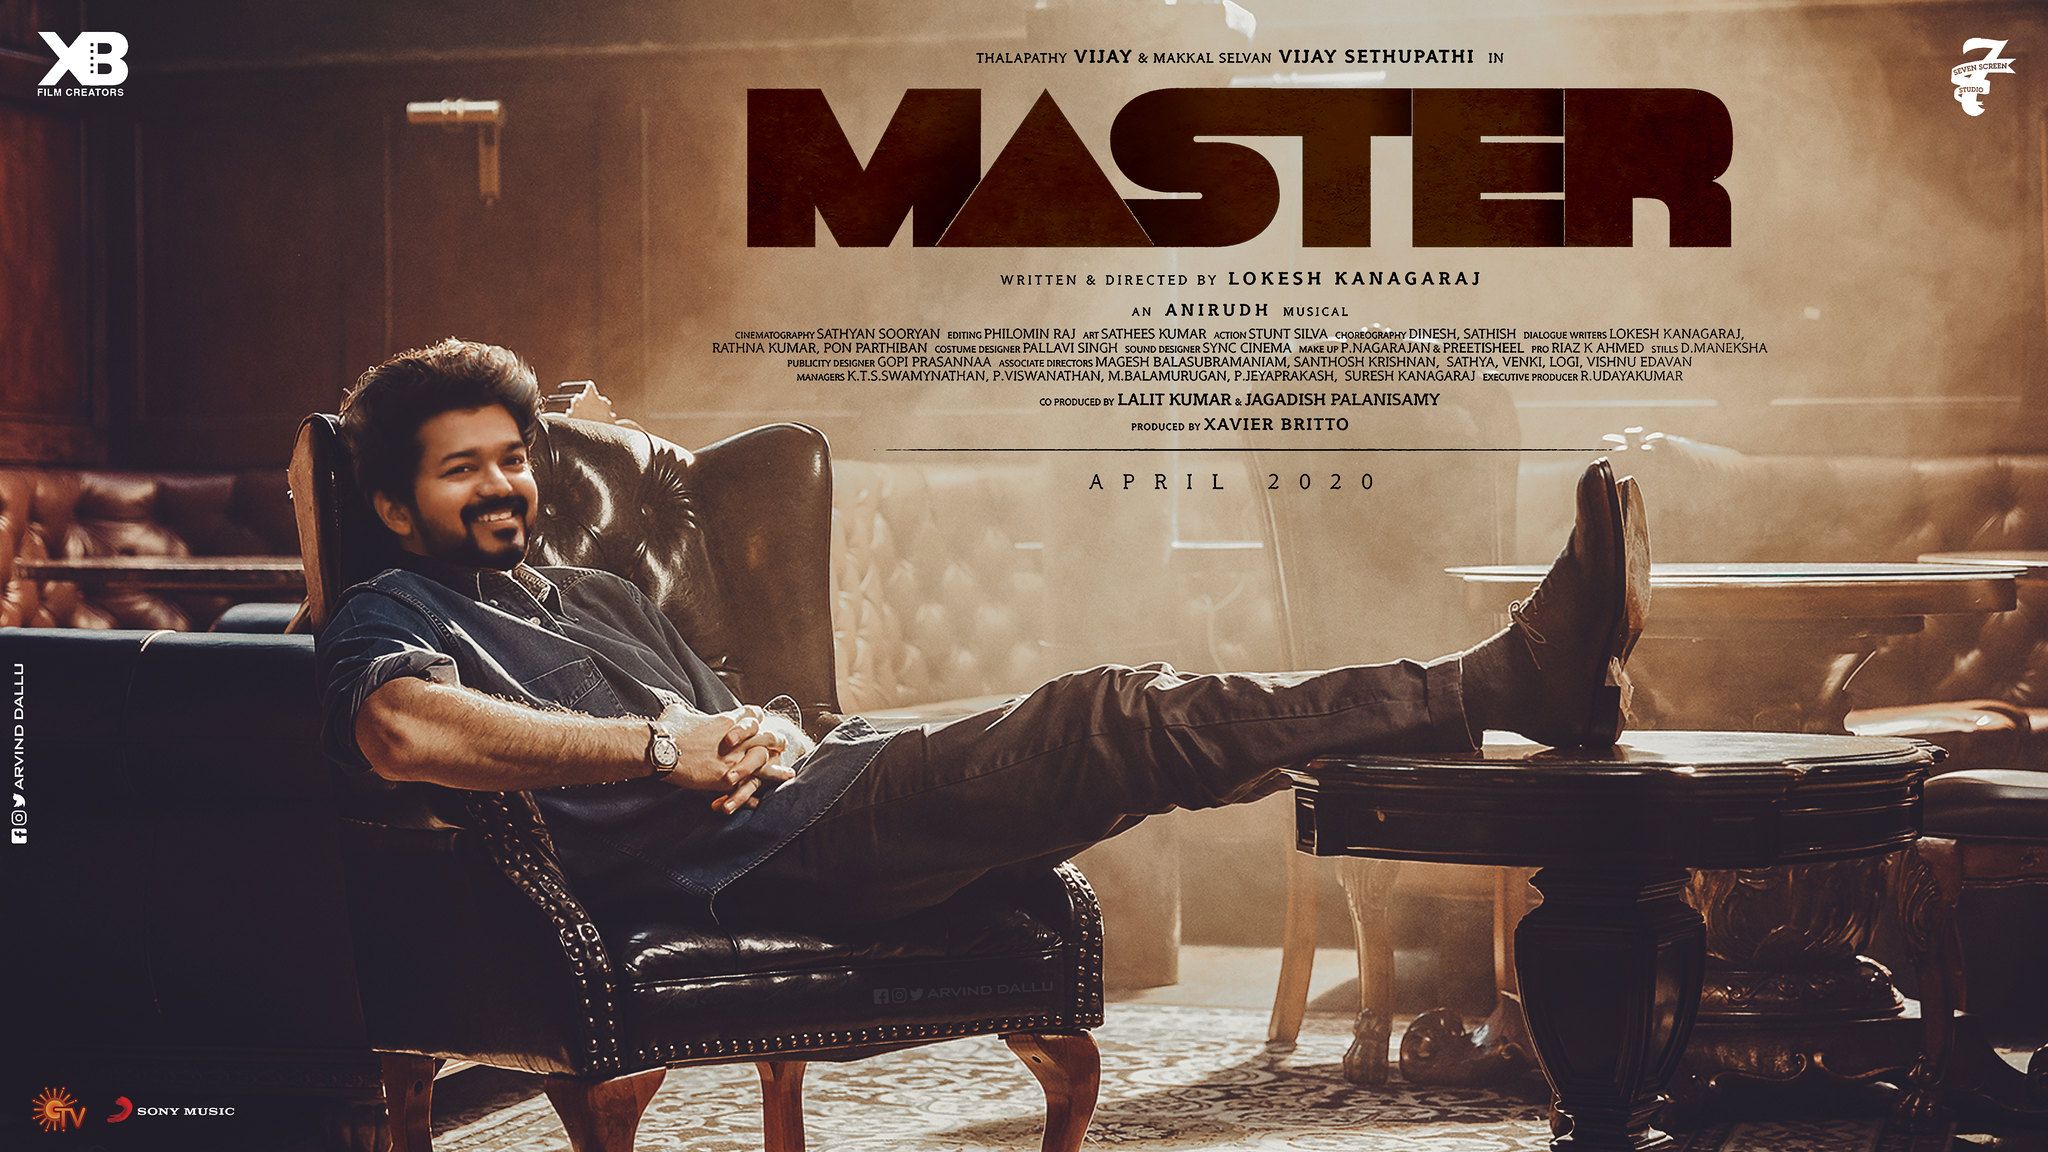 Master Movie Vijay 4K High Resolution Stills Free Download